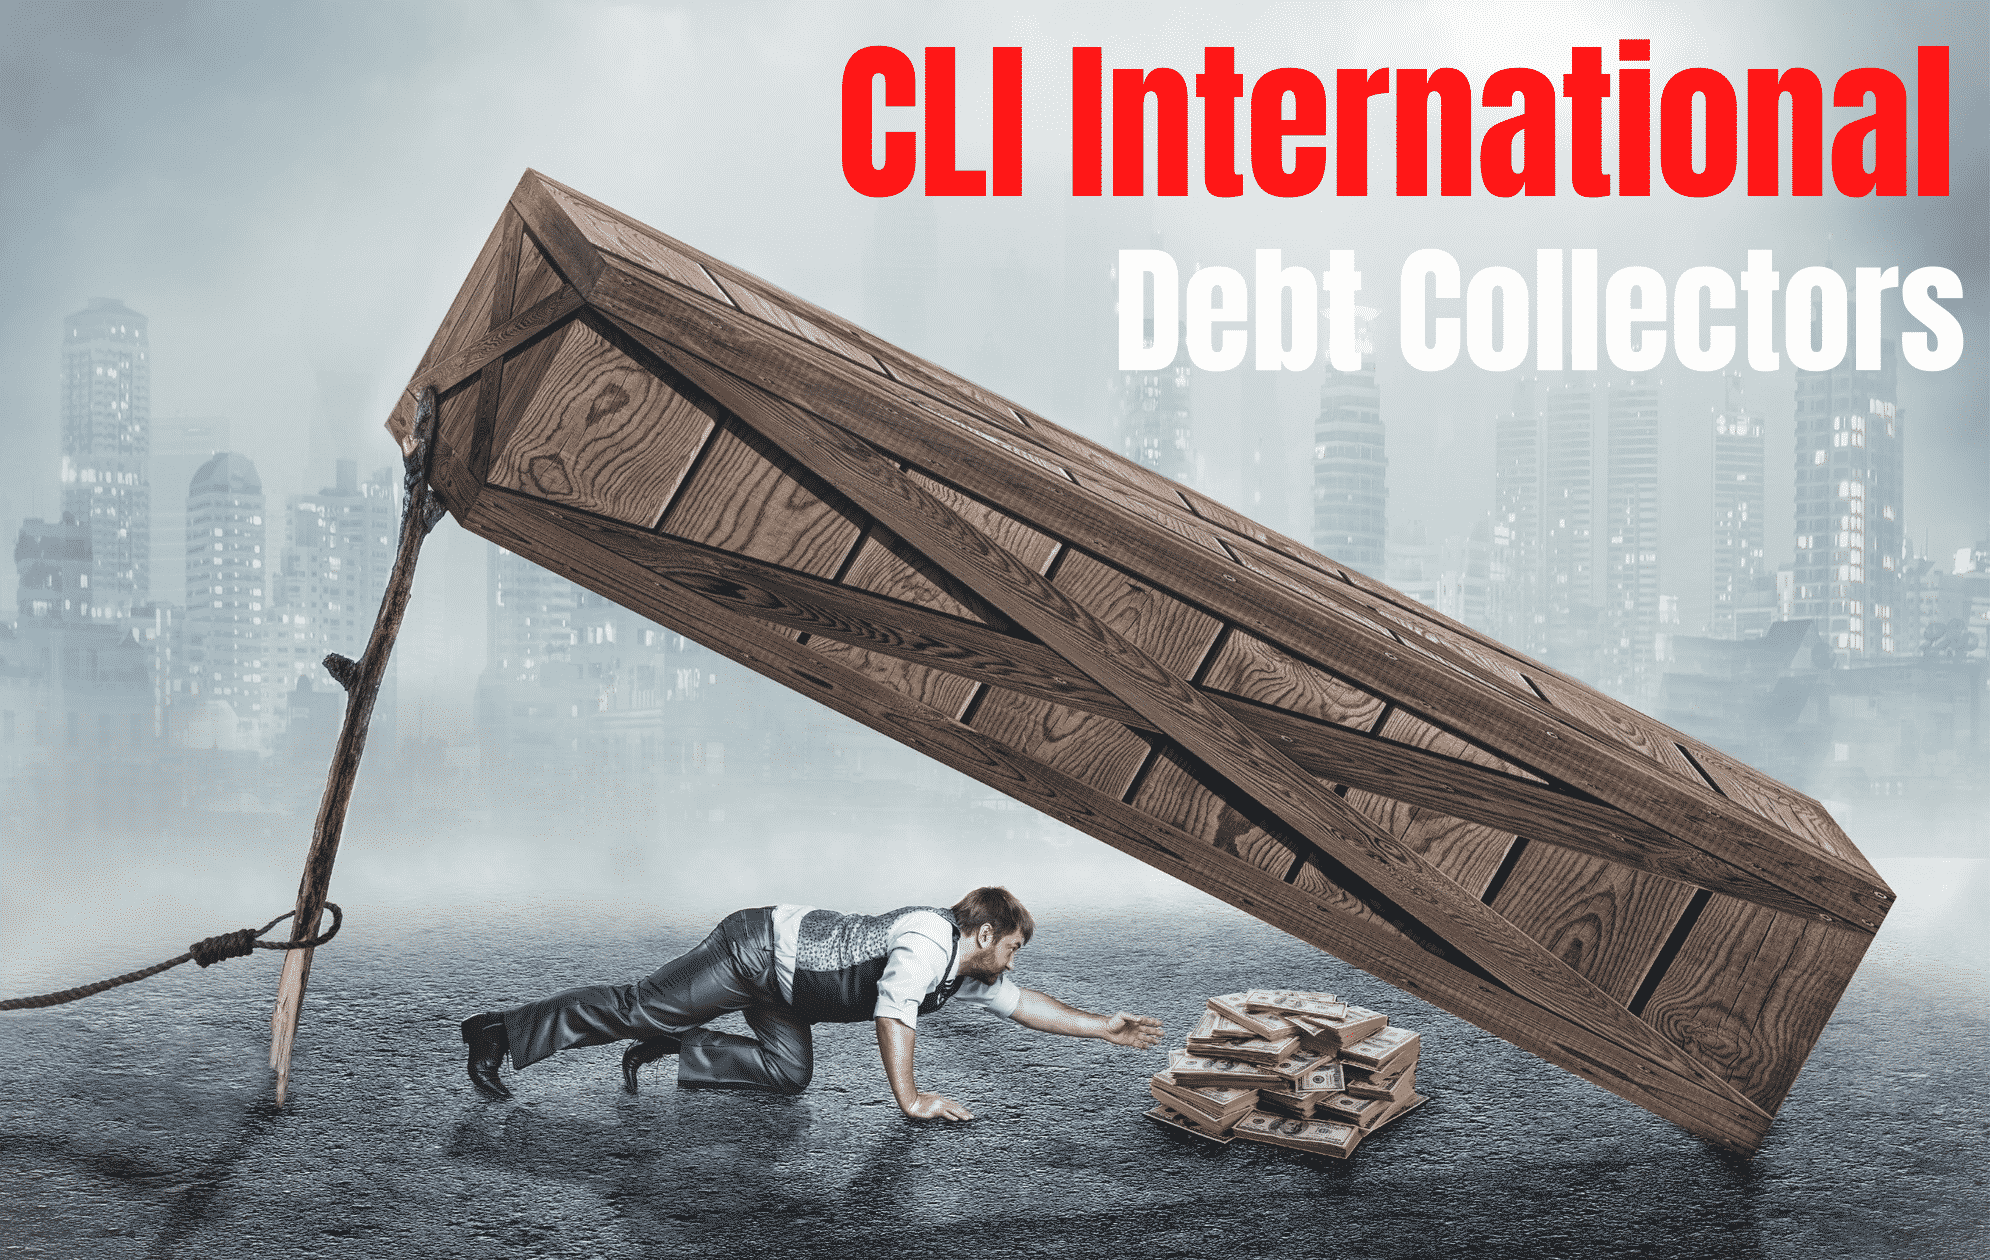 CLI-International-debt-collectors